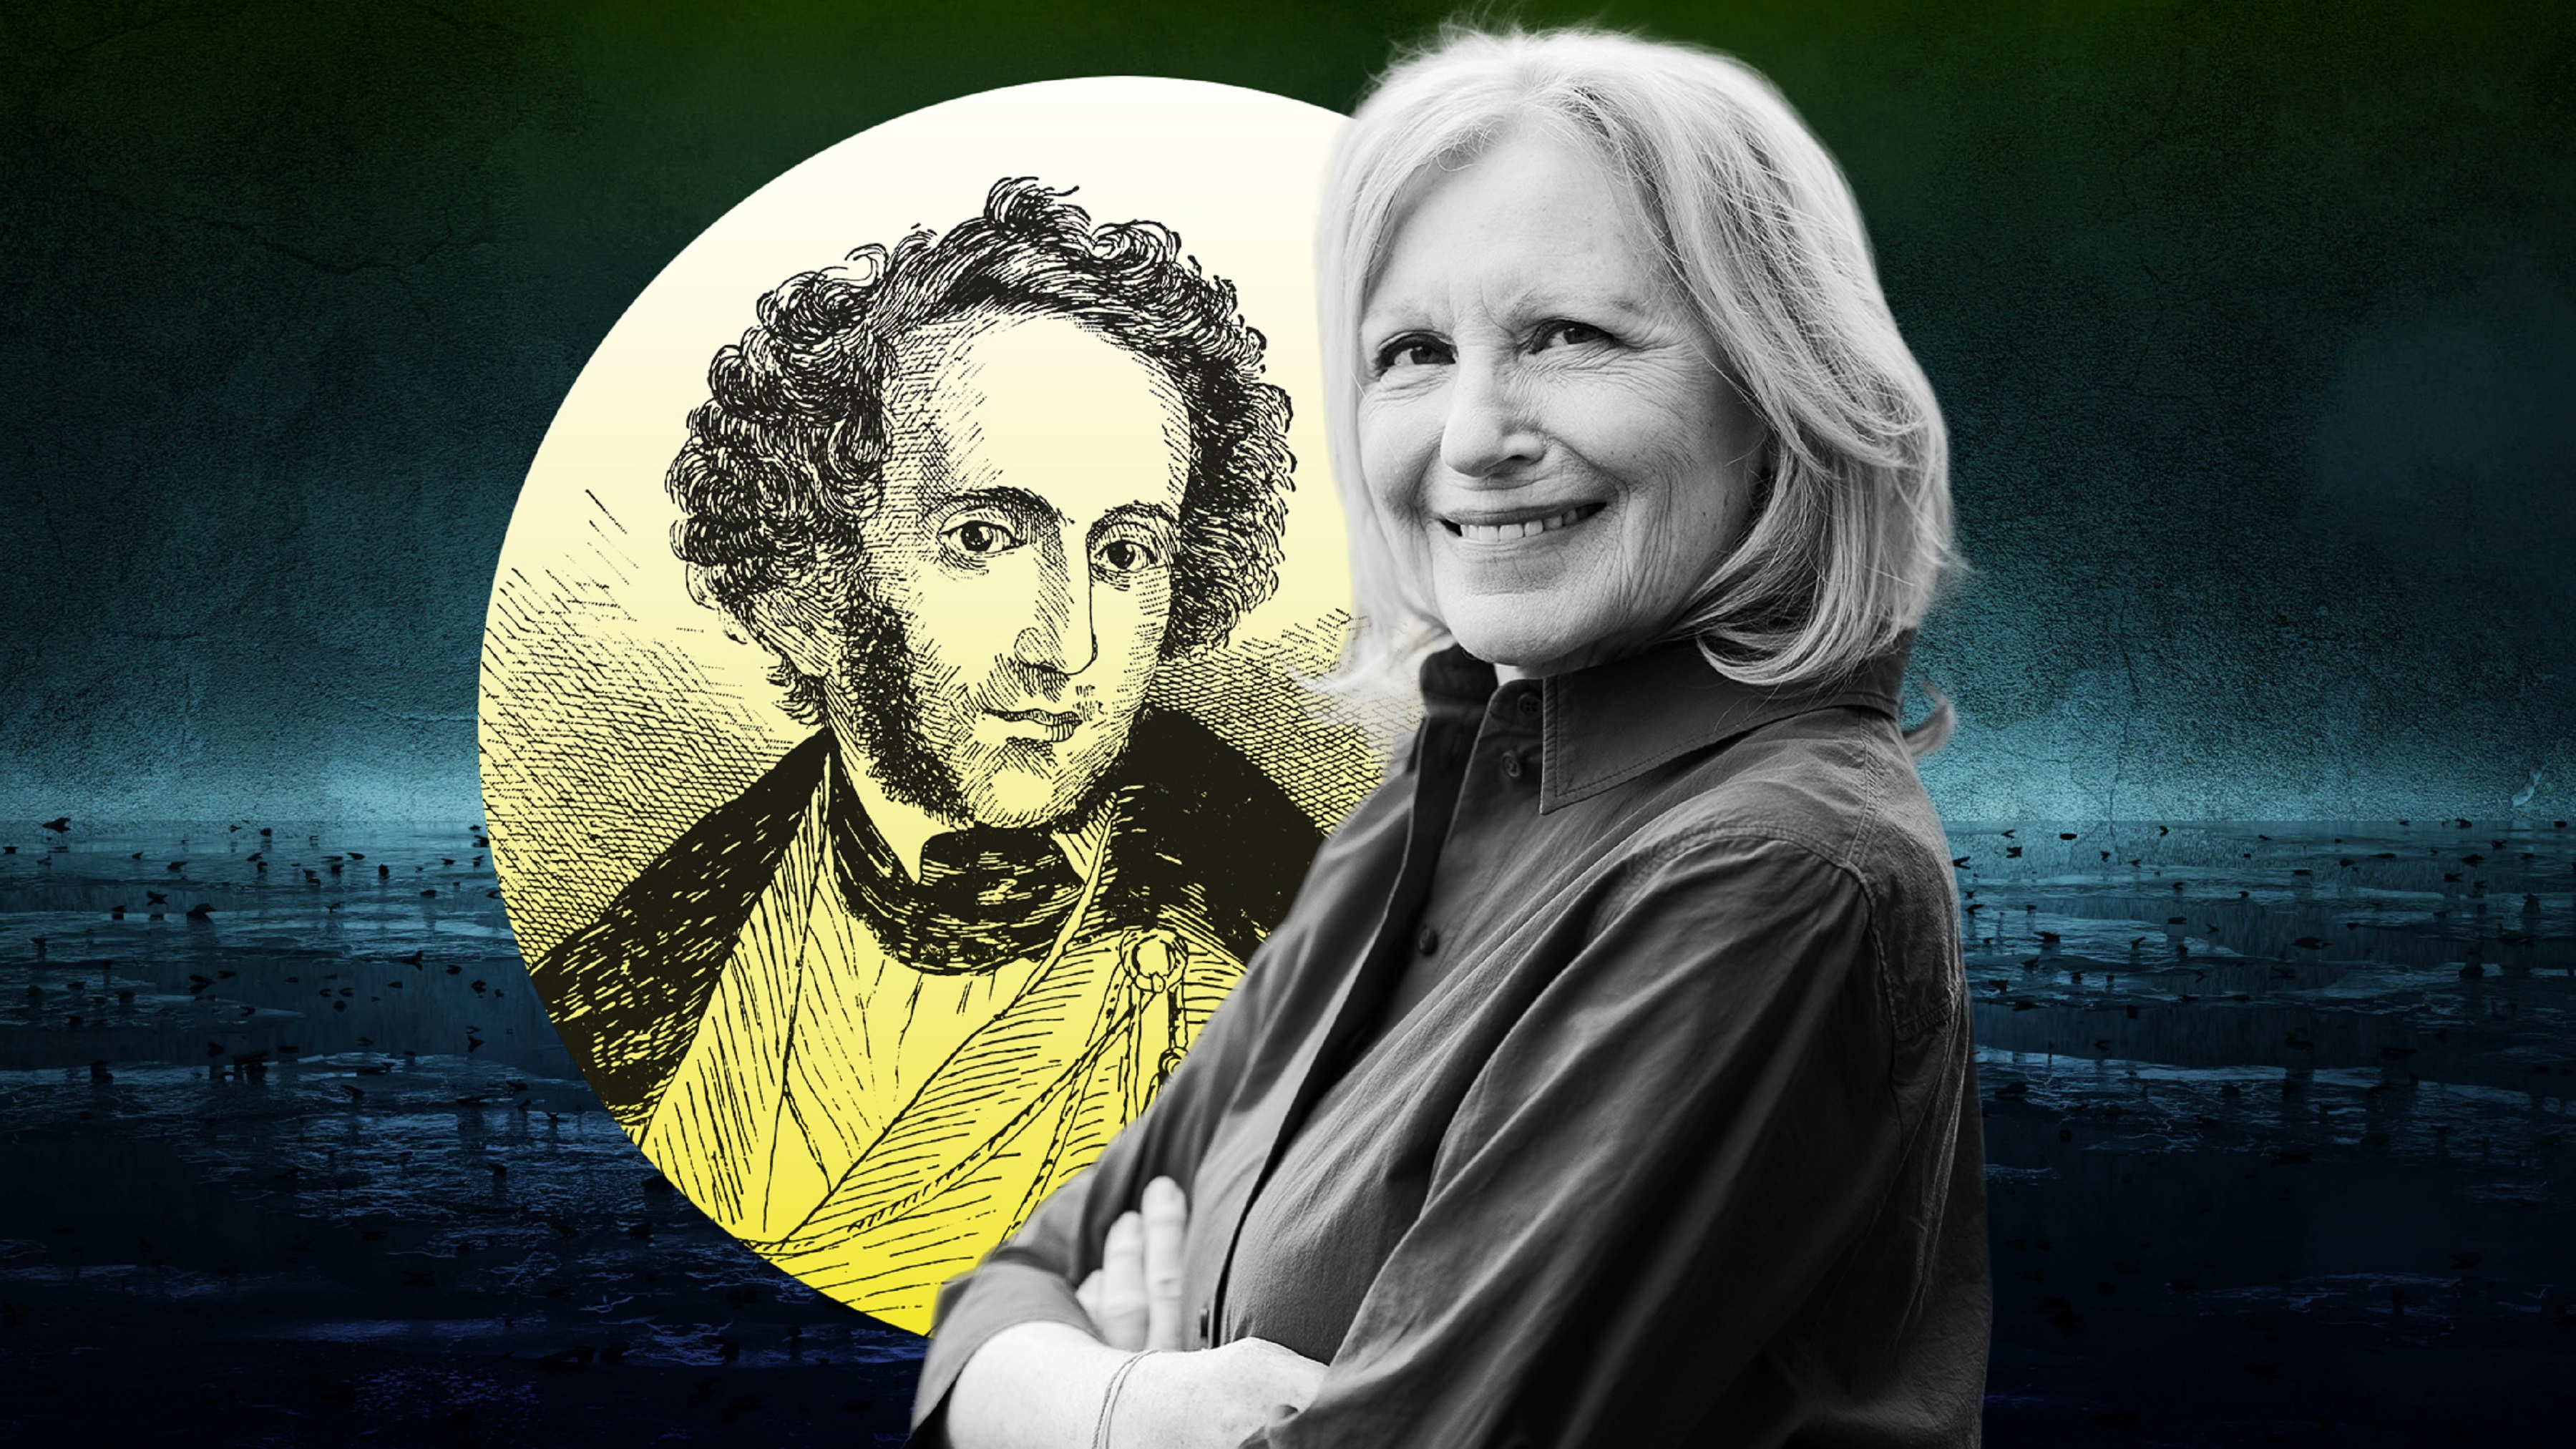 Freigestelltes Portrait von Maren Kroymann, was neben einem mit gelbem Verlauf gefüllten Kreis sitzt, der auf einem dunklen Untergrund steht. Im Kreis eine alte Grafik von Mendelssohn